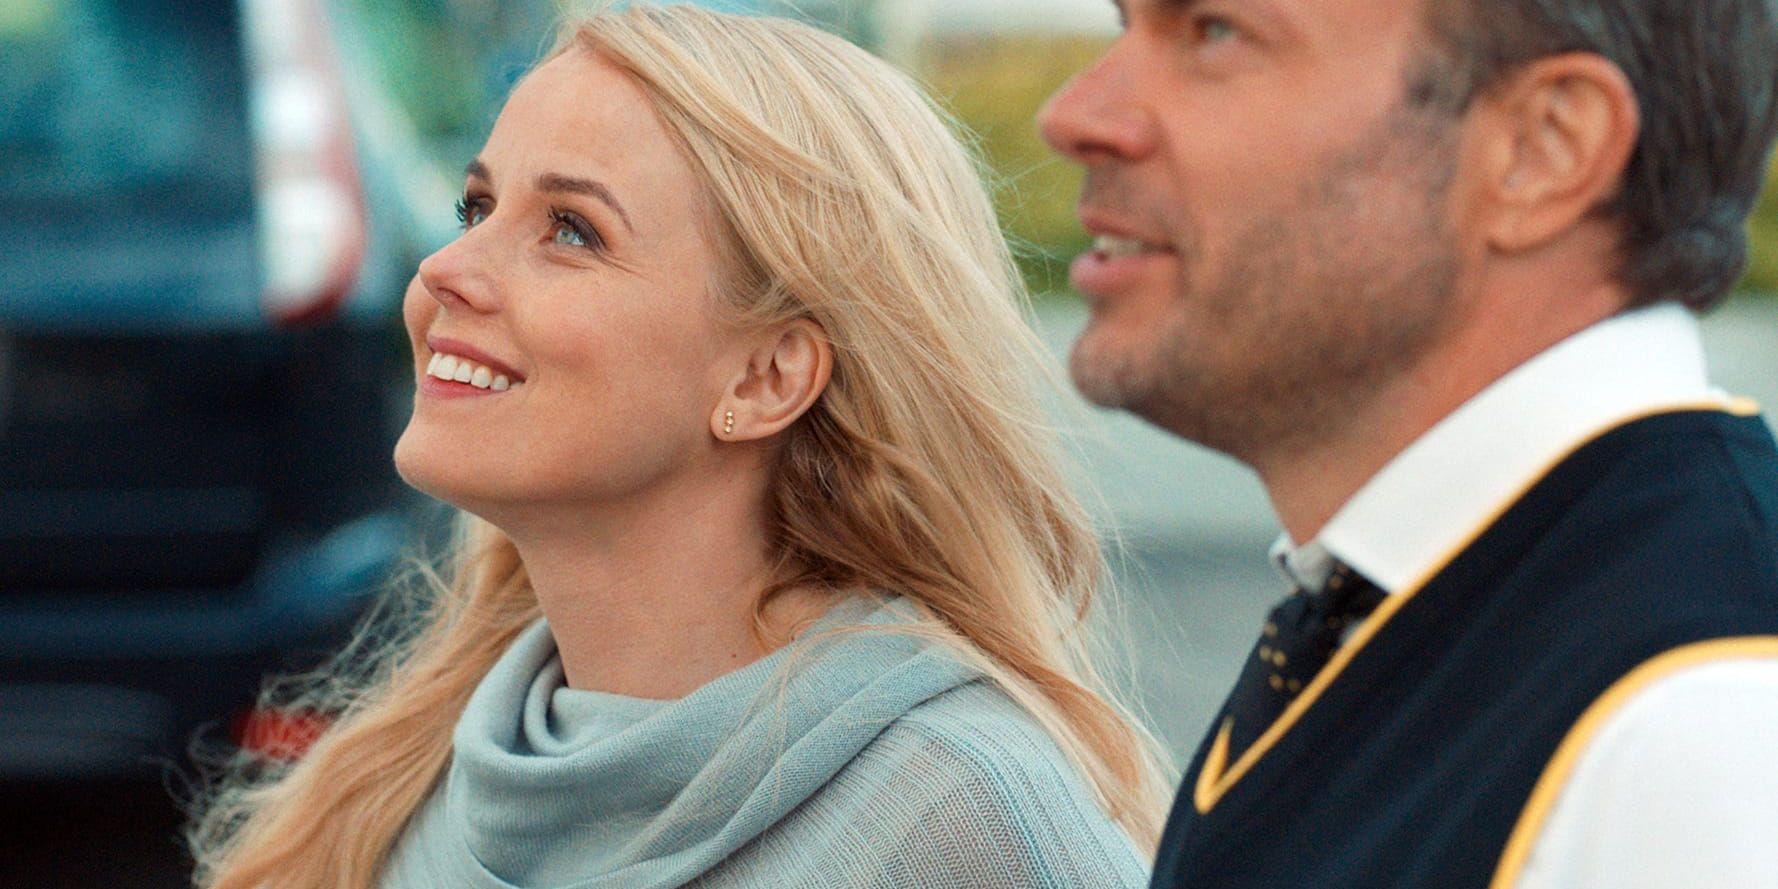 Helena af Sandeberg och David Hellenius spelar ett ex-par som möts igen i "Lyckligare kan ingen vara". Pressbild.